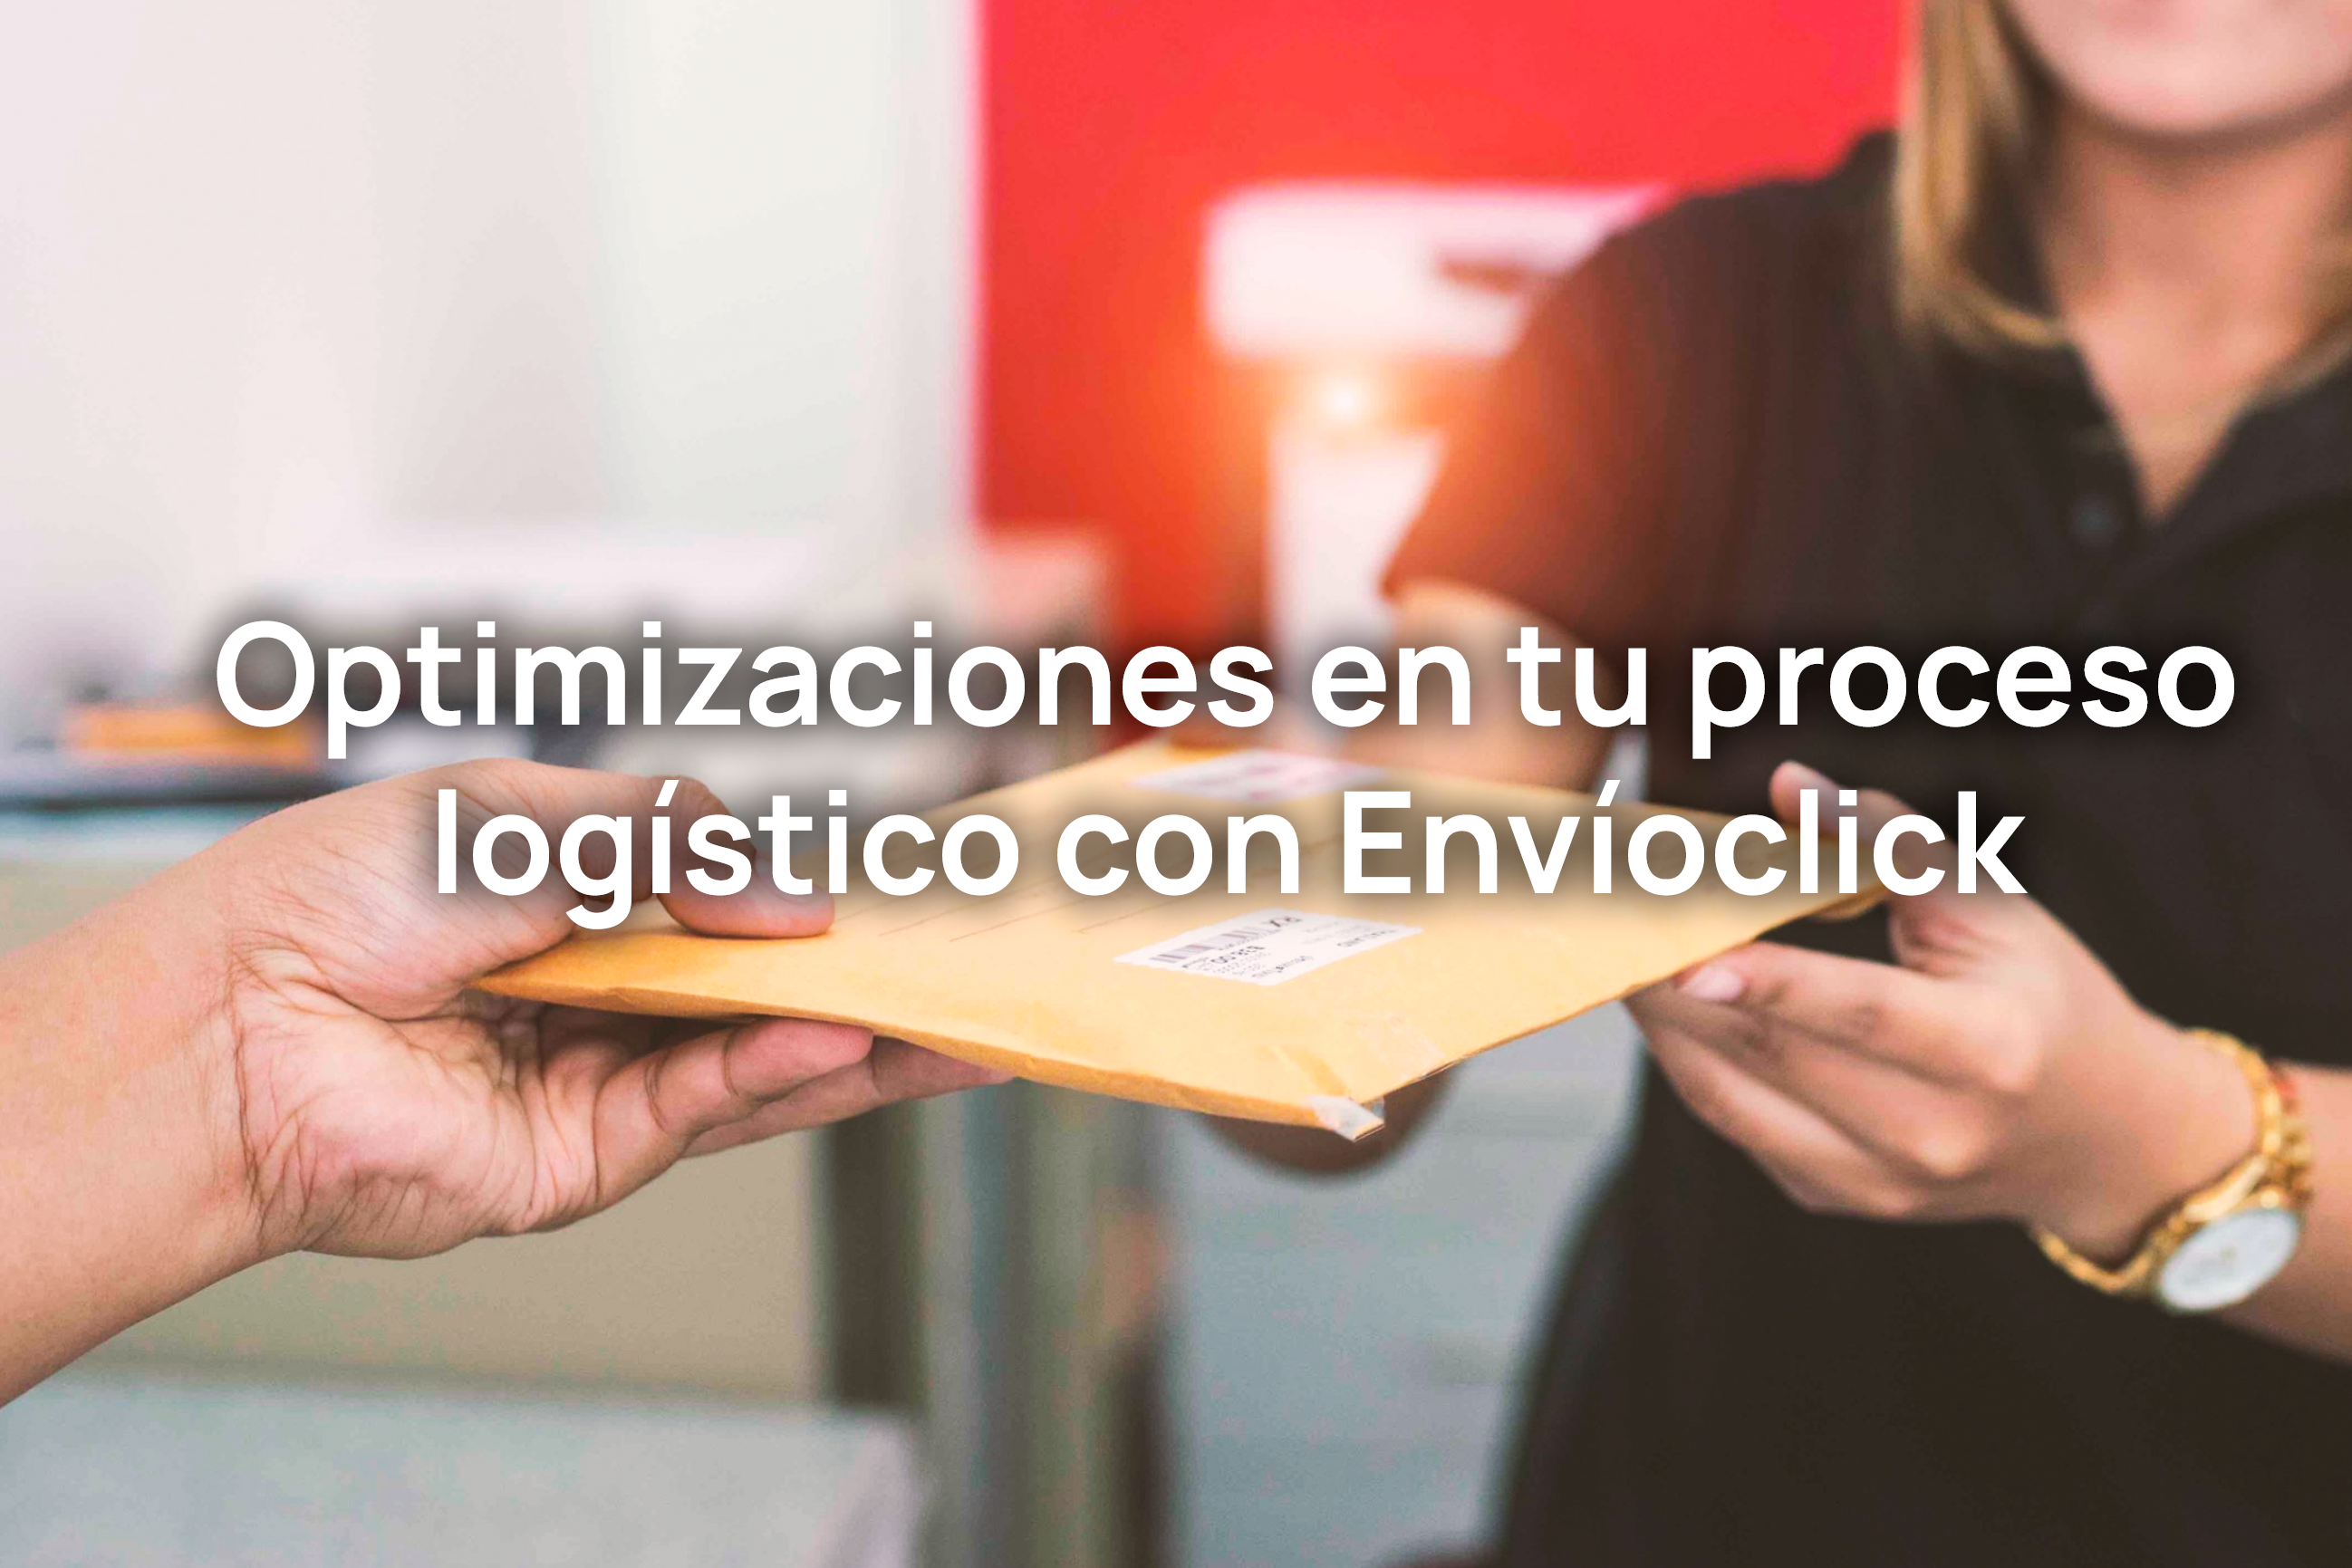 Optimizaciones en tu proceso logístico con Envíoclick